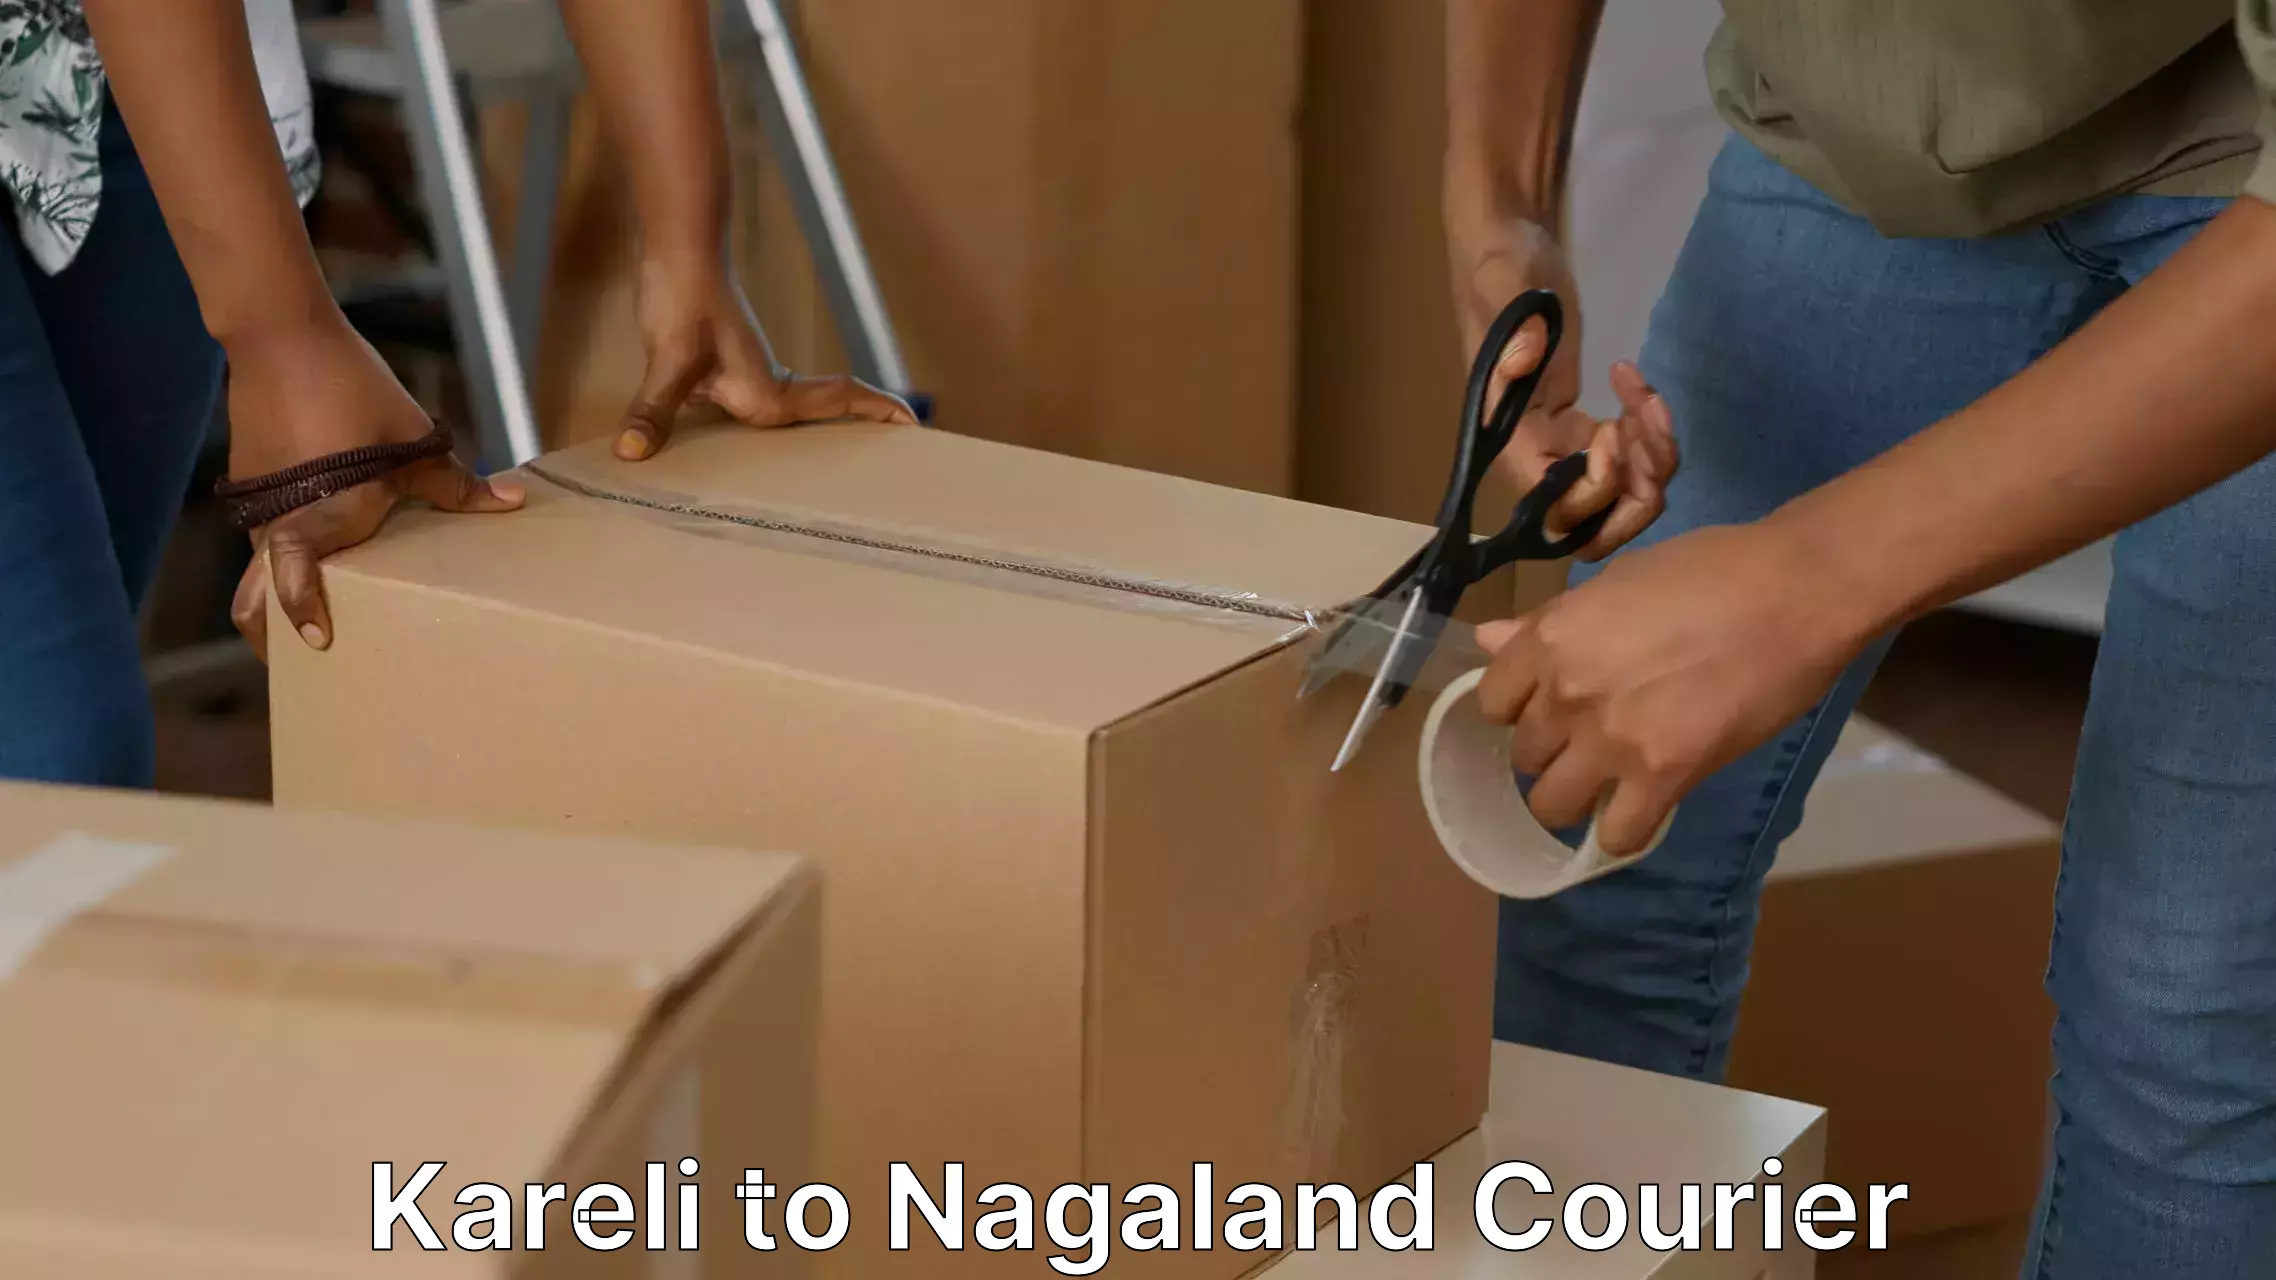 Moving and packing experts Kareli to Nagaland